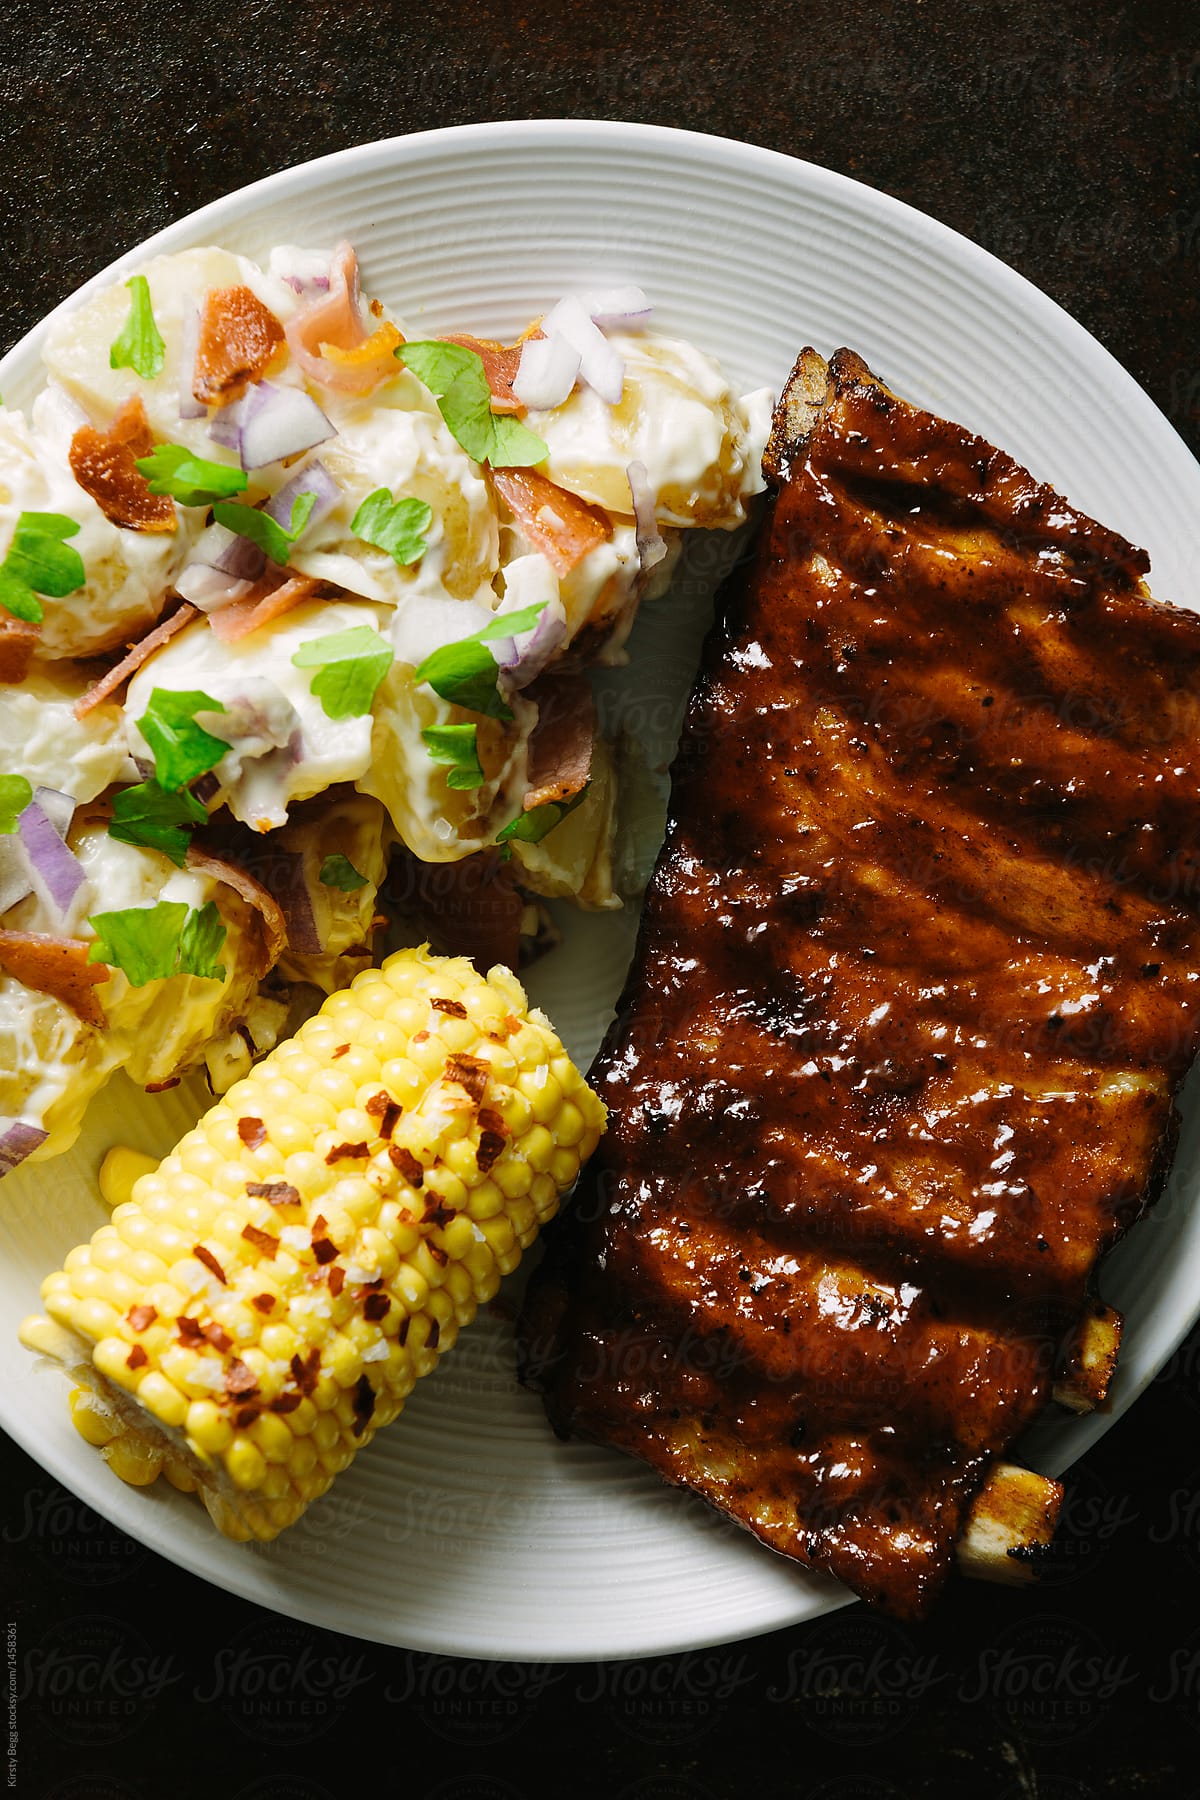 Plate of ribs, potato salad and corn on the cob